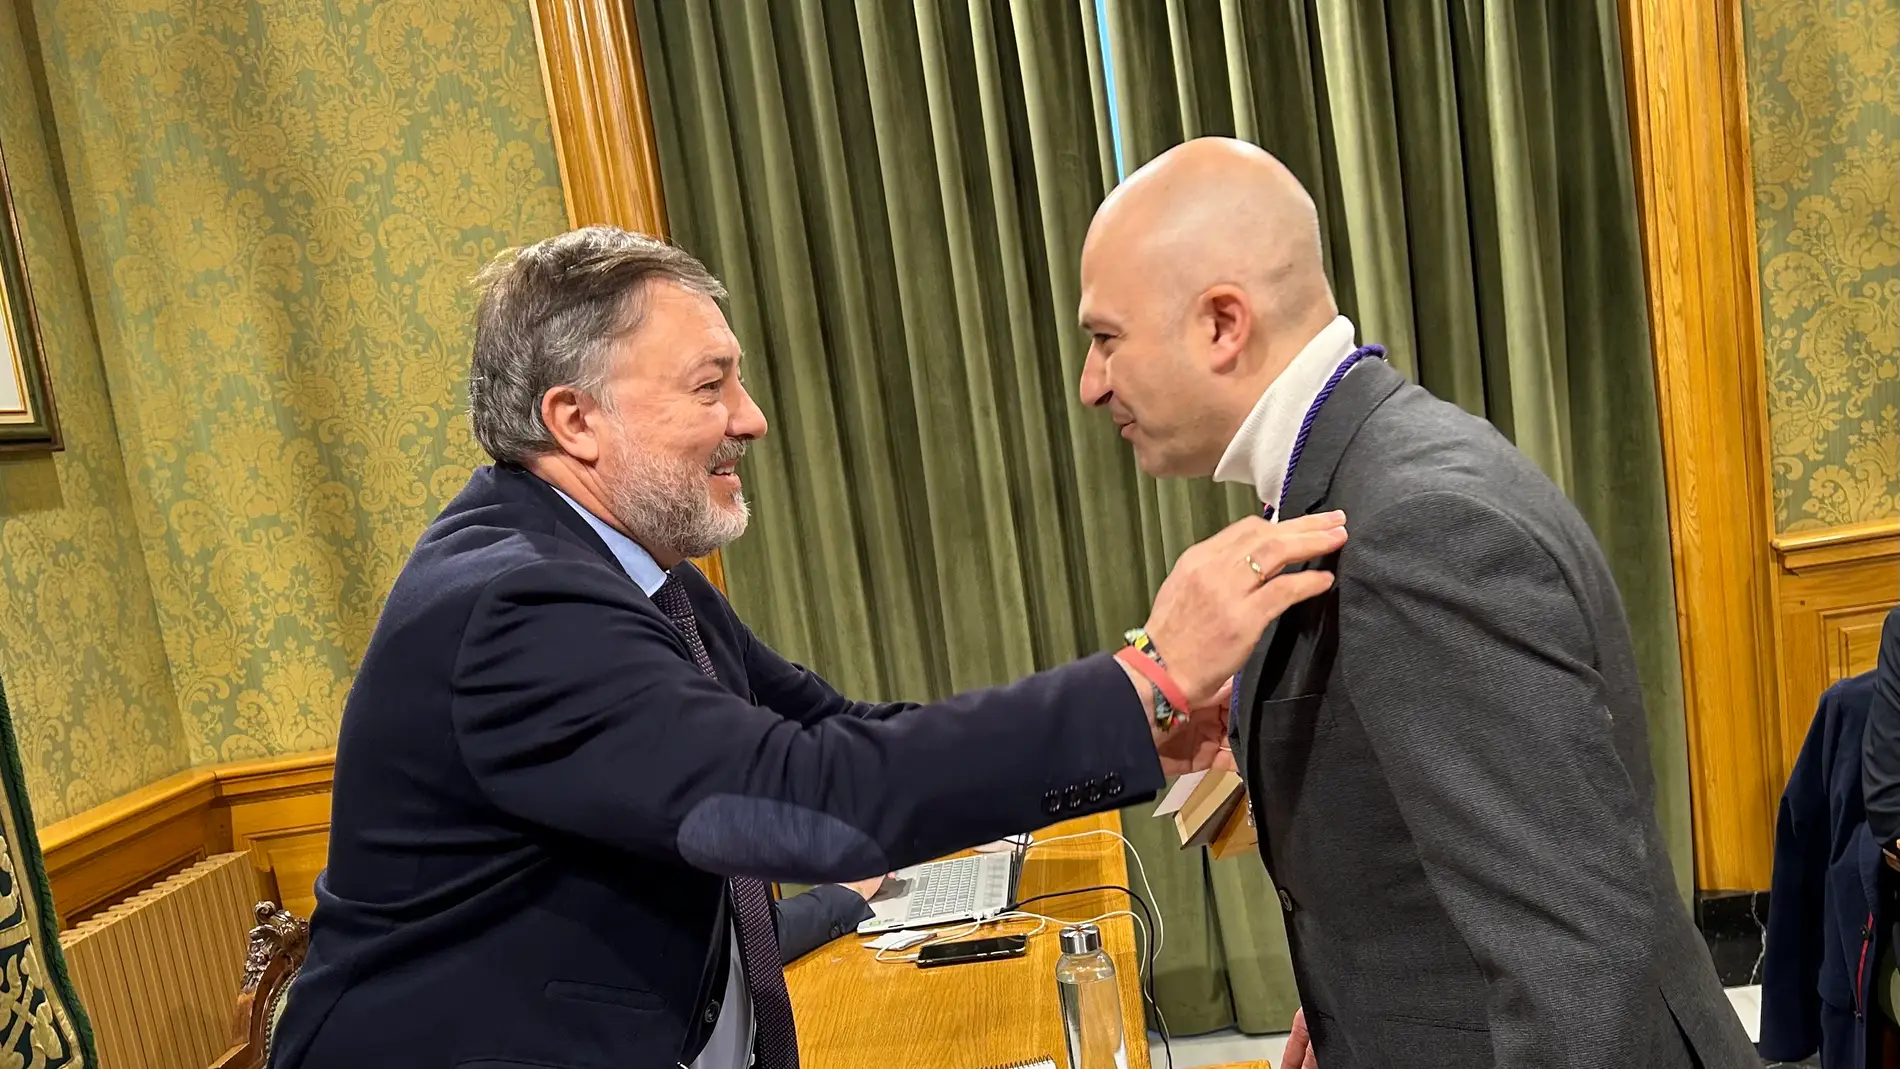 El nuevo concejal con el alcalde de Cuenca, Darío Dolz, quien le ha impuesto la medalla como edil